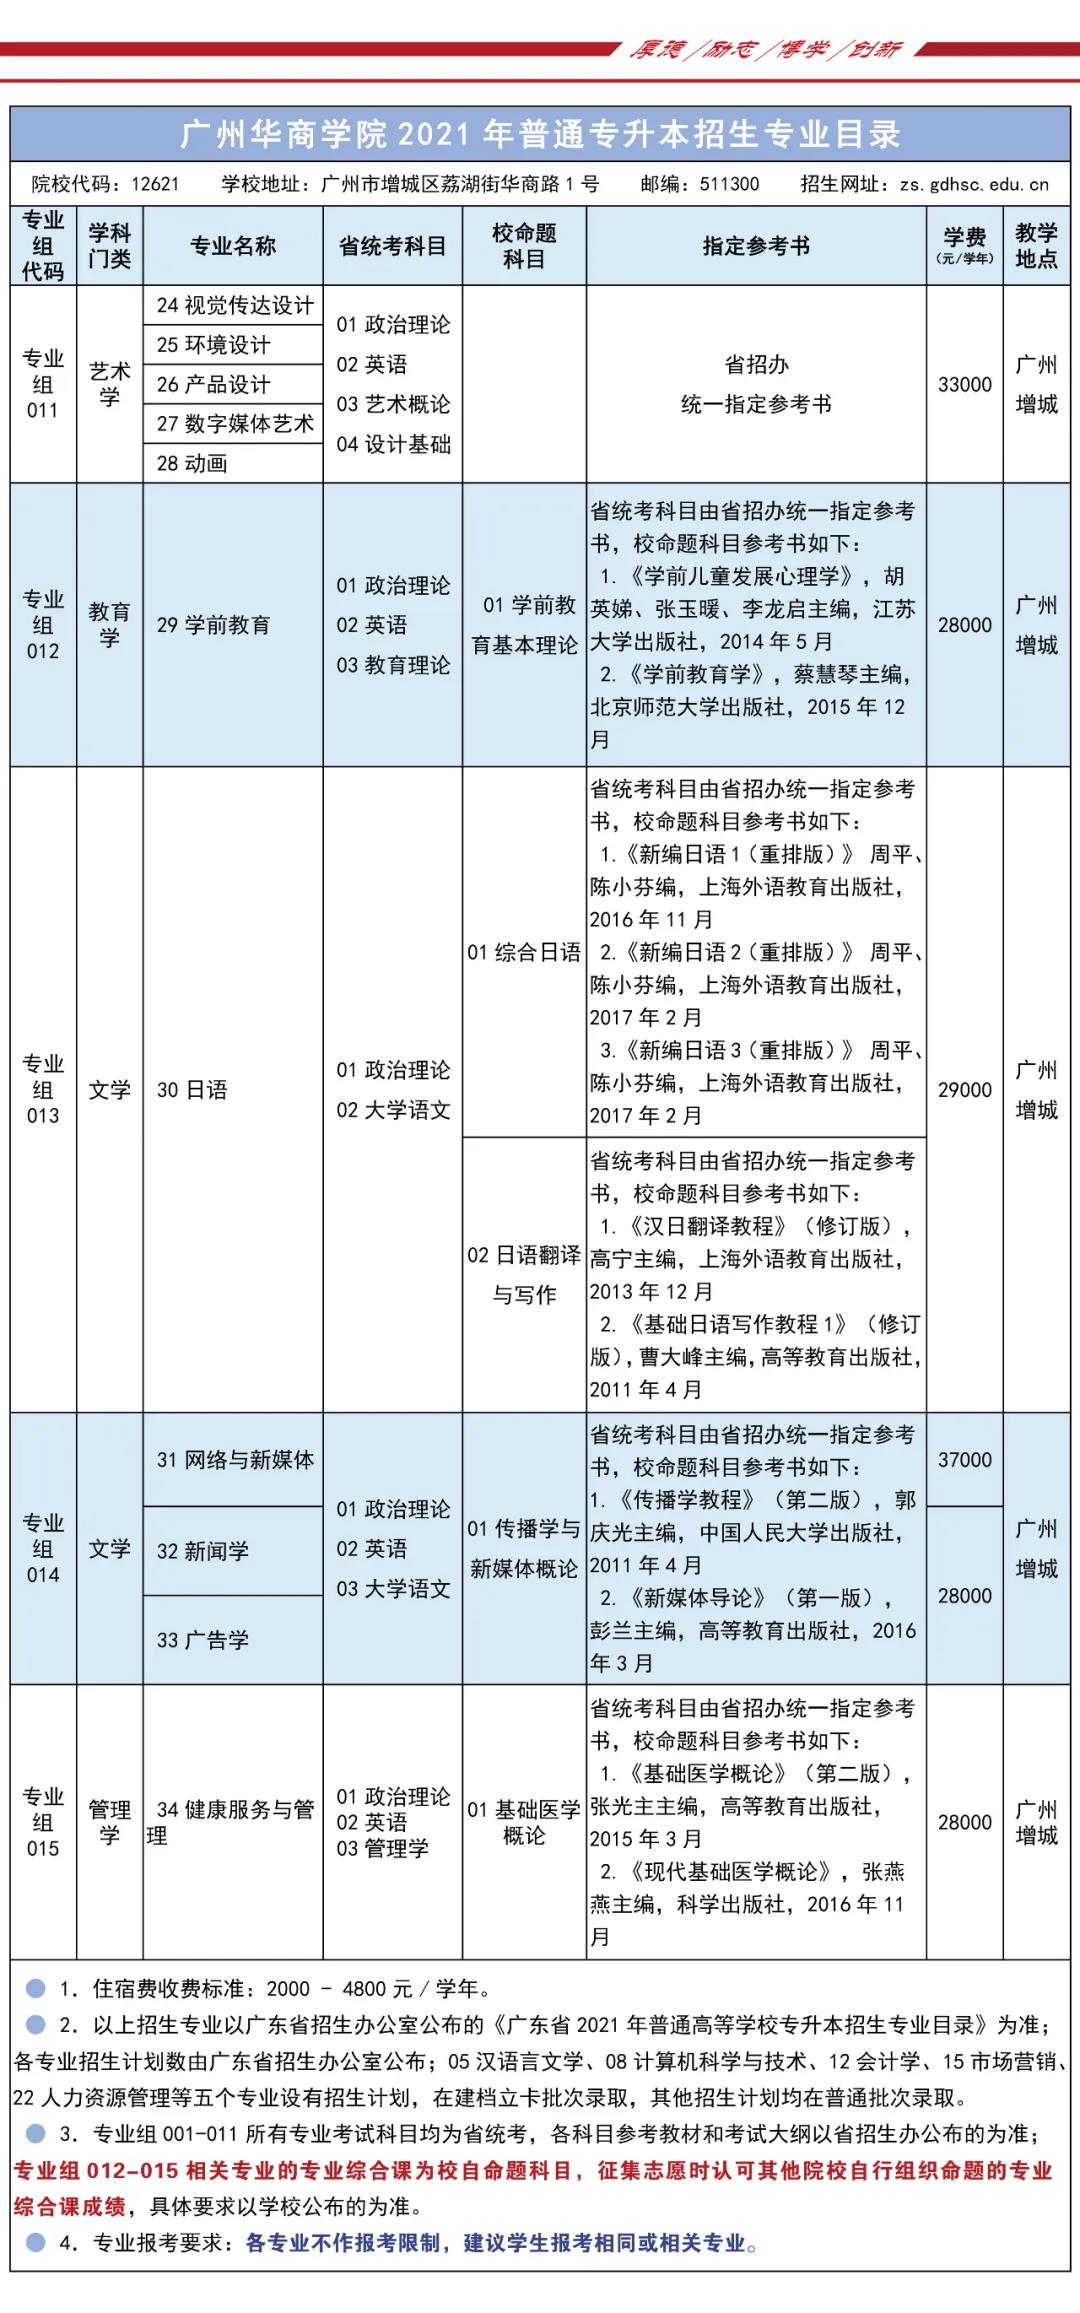 欢迎报考 | 《广州华商学院》2021年普通专升本招生简章正式公布！